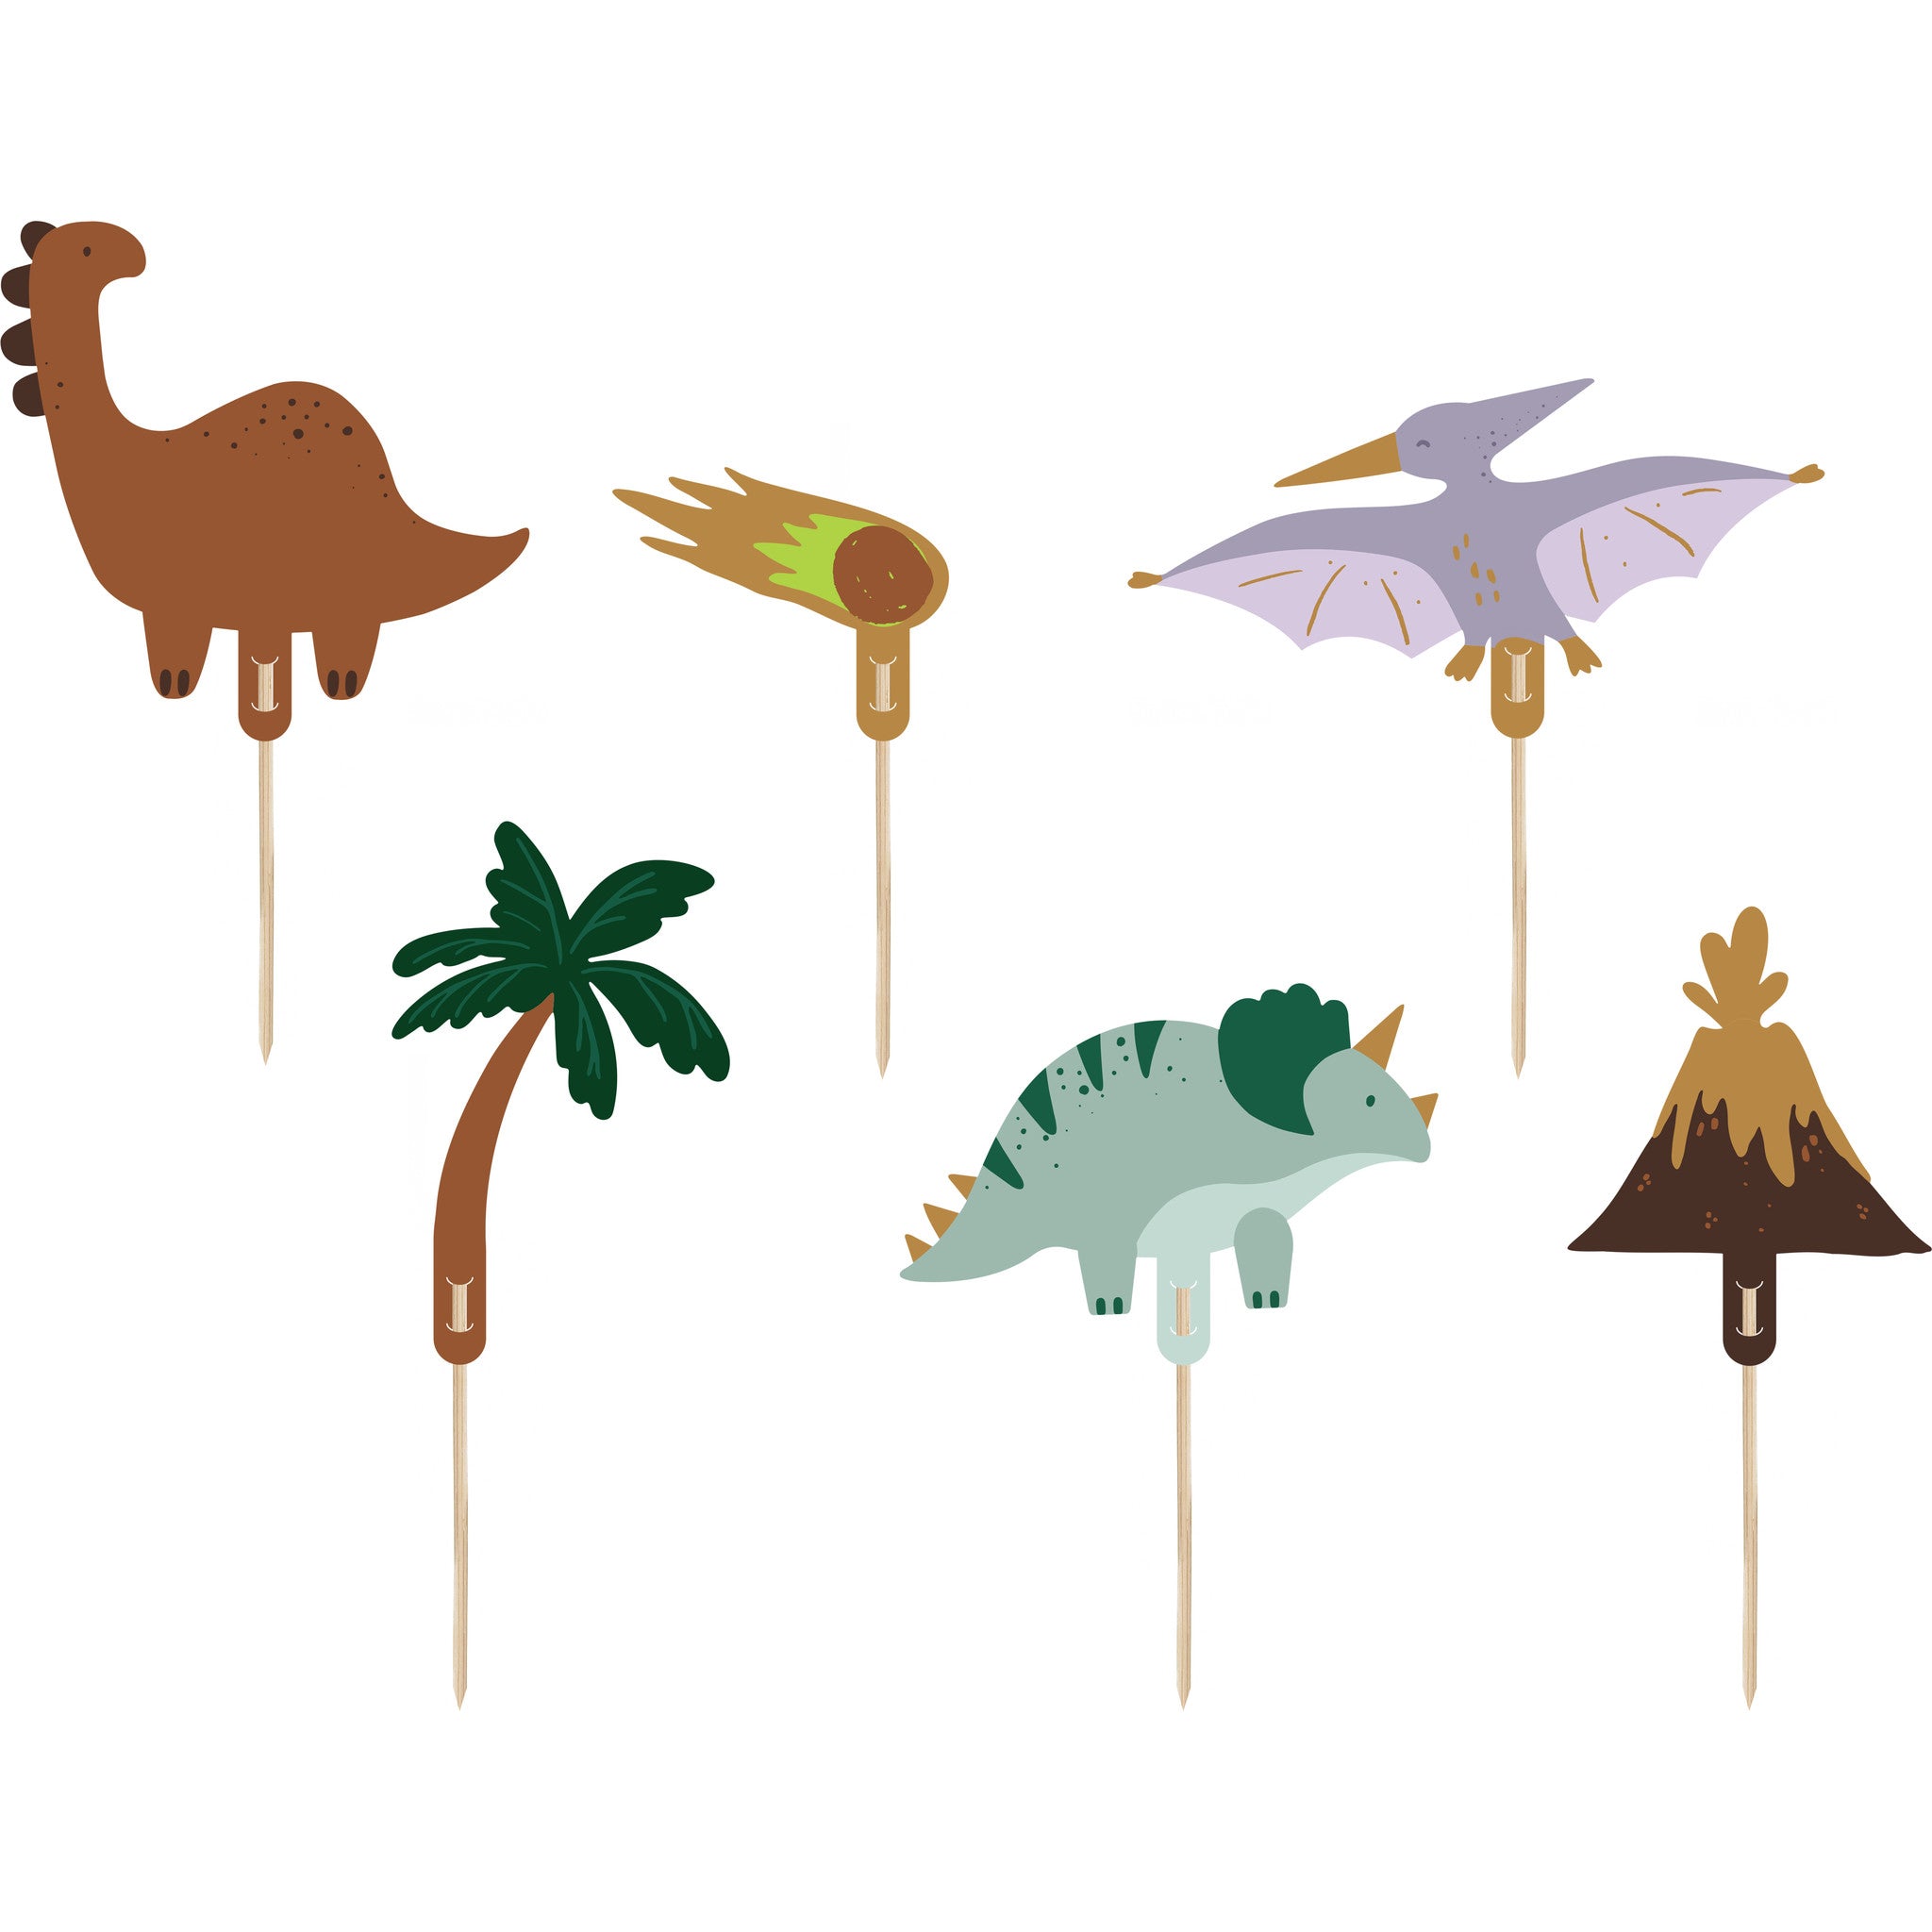 Topo de Bolo/Cupcakes Dinossauros